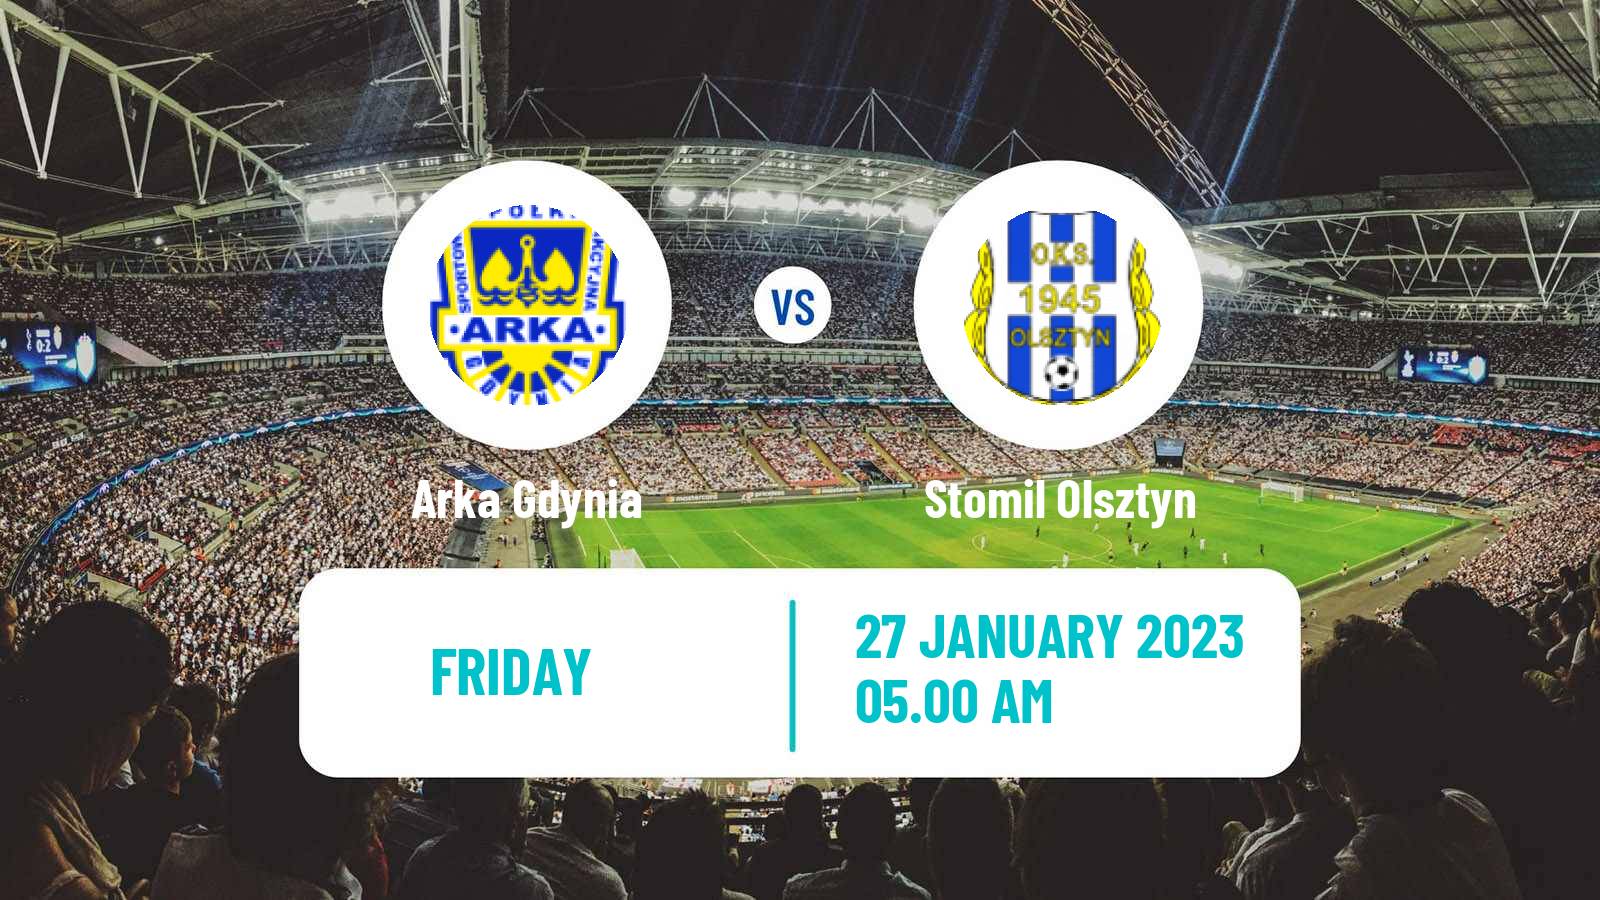 Soccer Club Friendly Arka Gdynia - Stomil Olsztyn